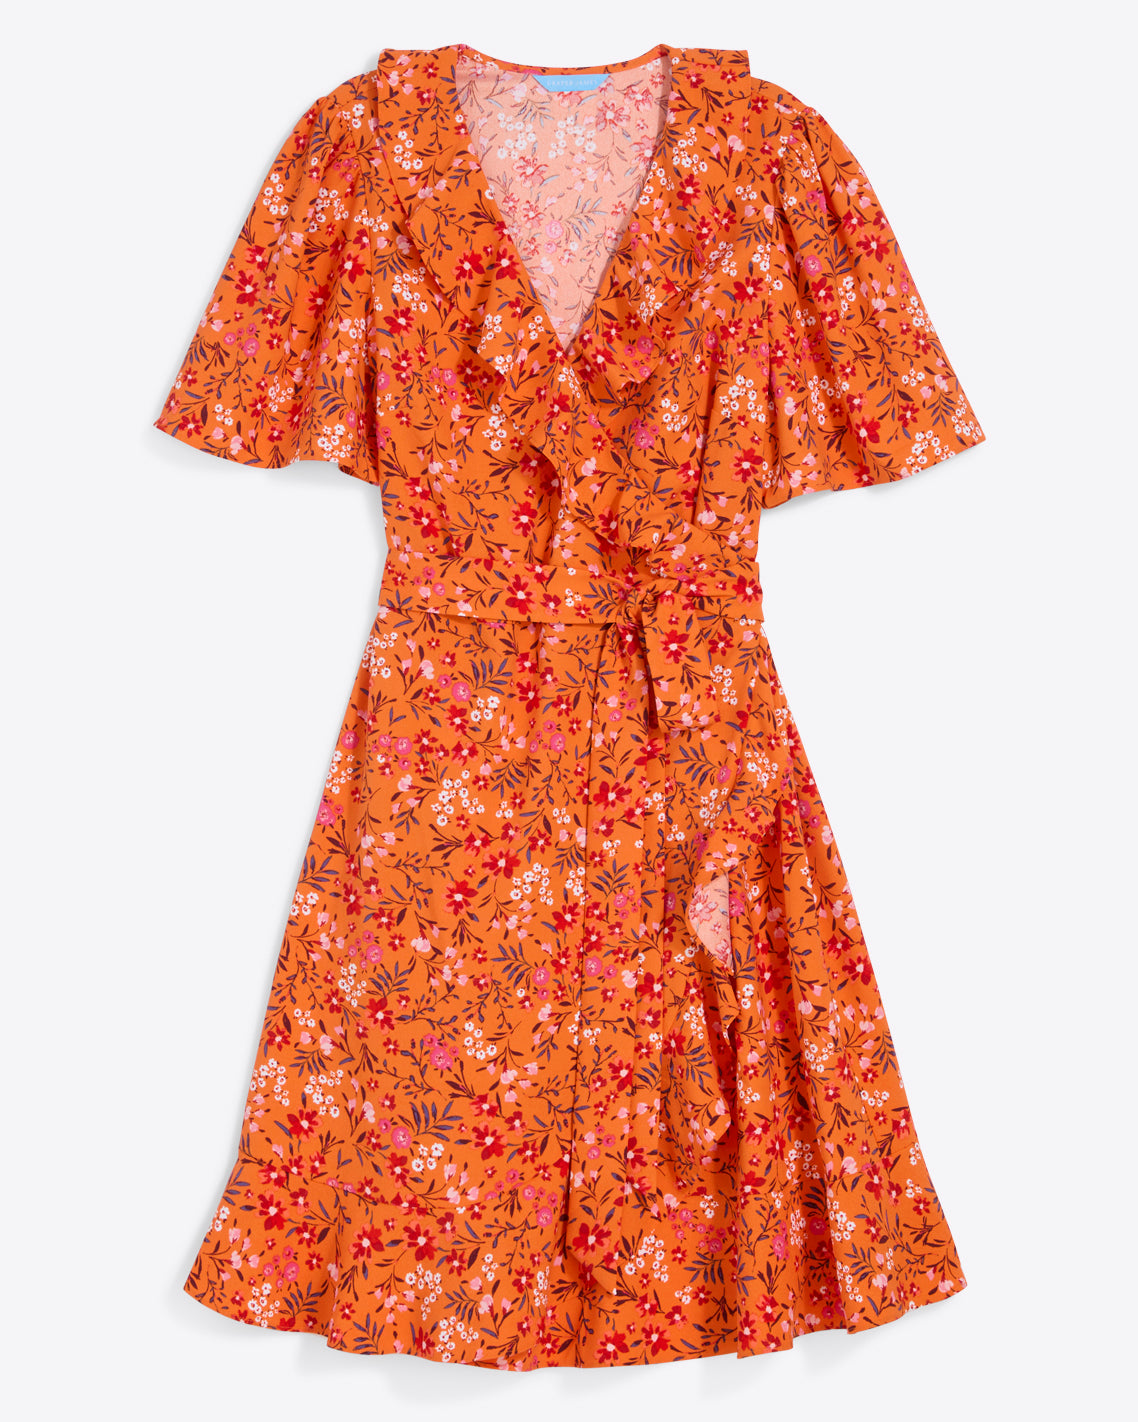 Reba Wrap Dress in Apricot Pansy Floral